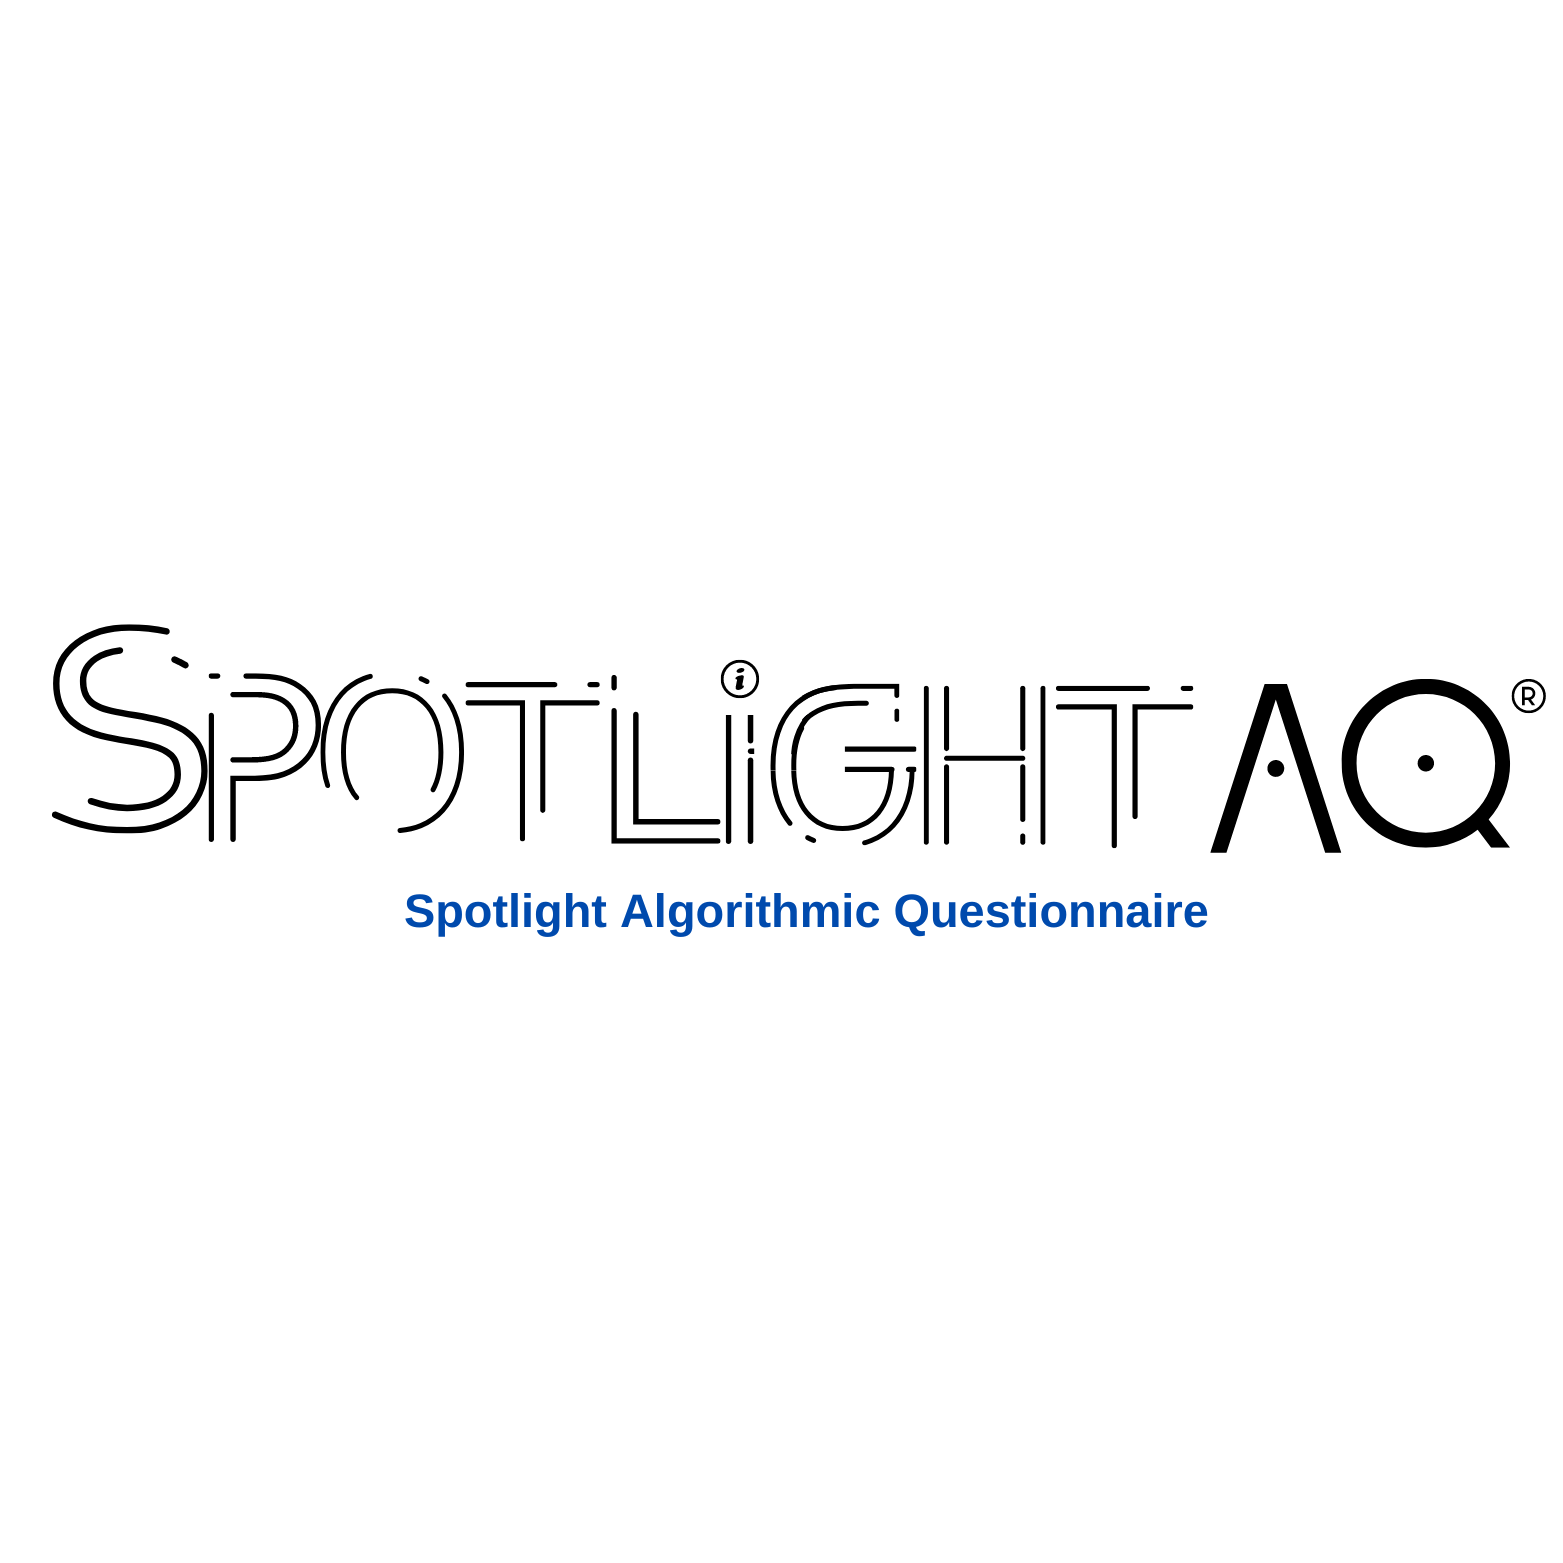 Spotlight-AQ